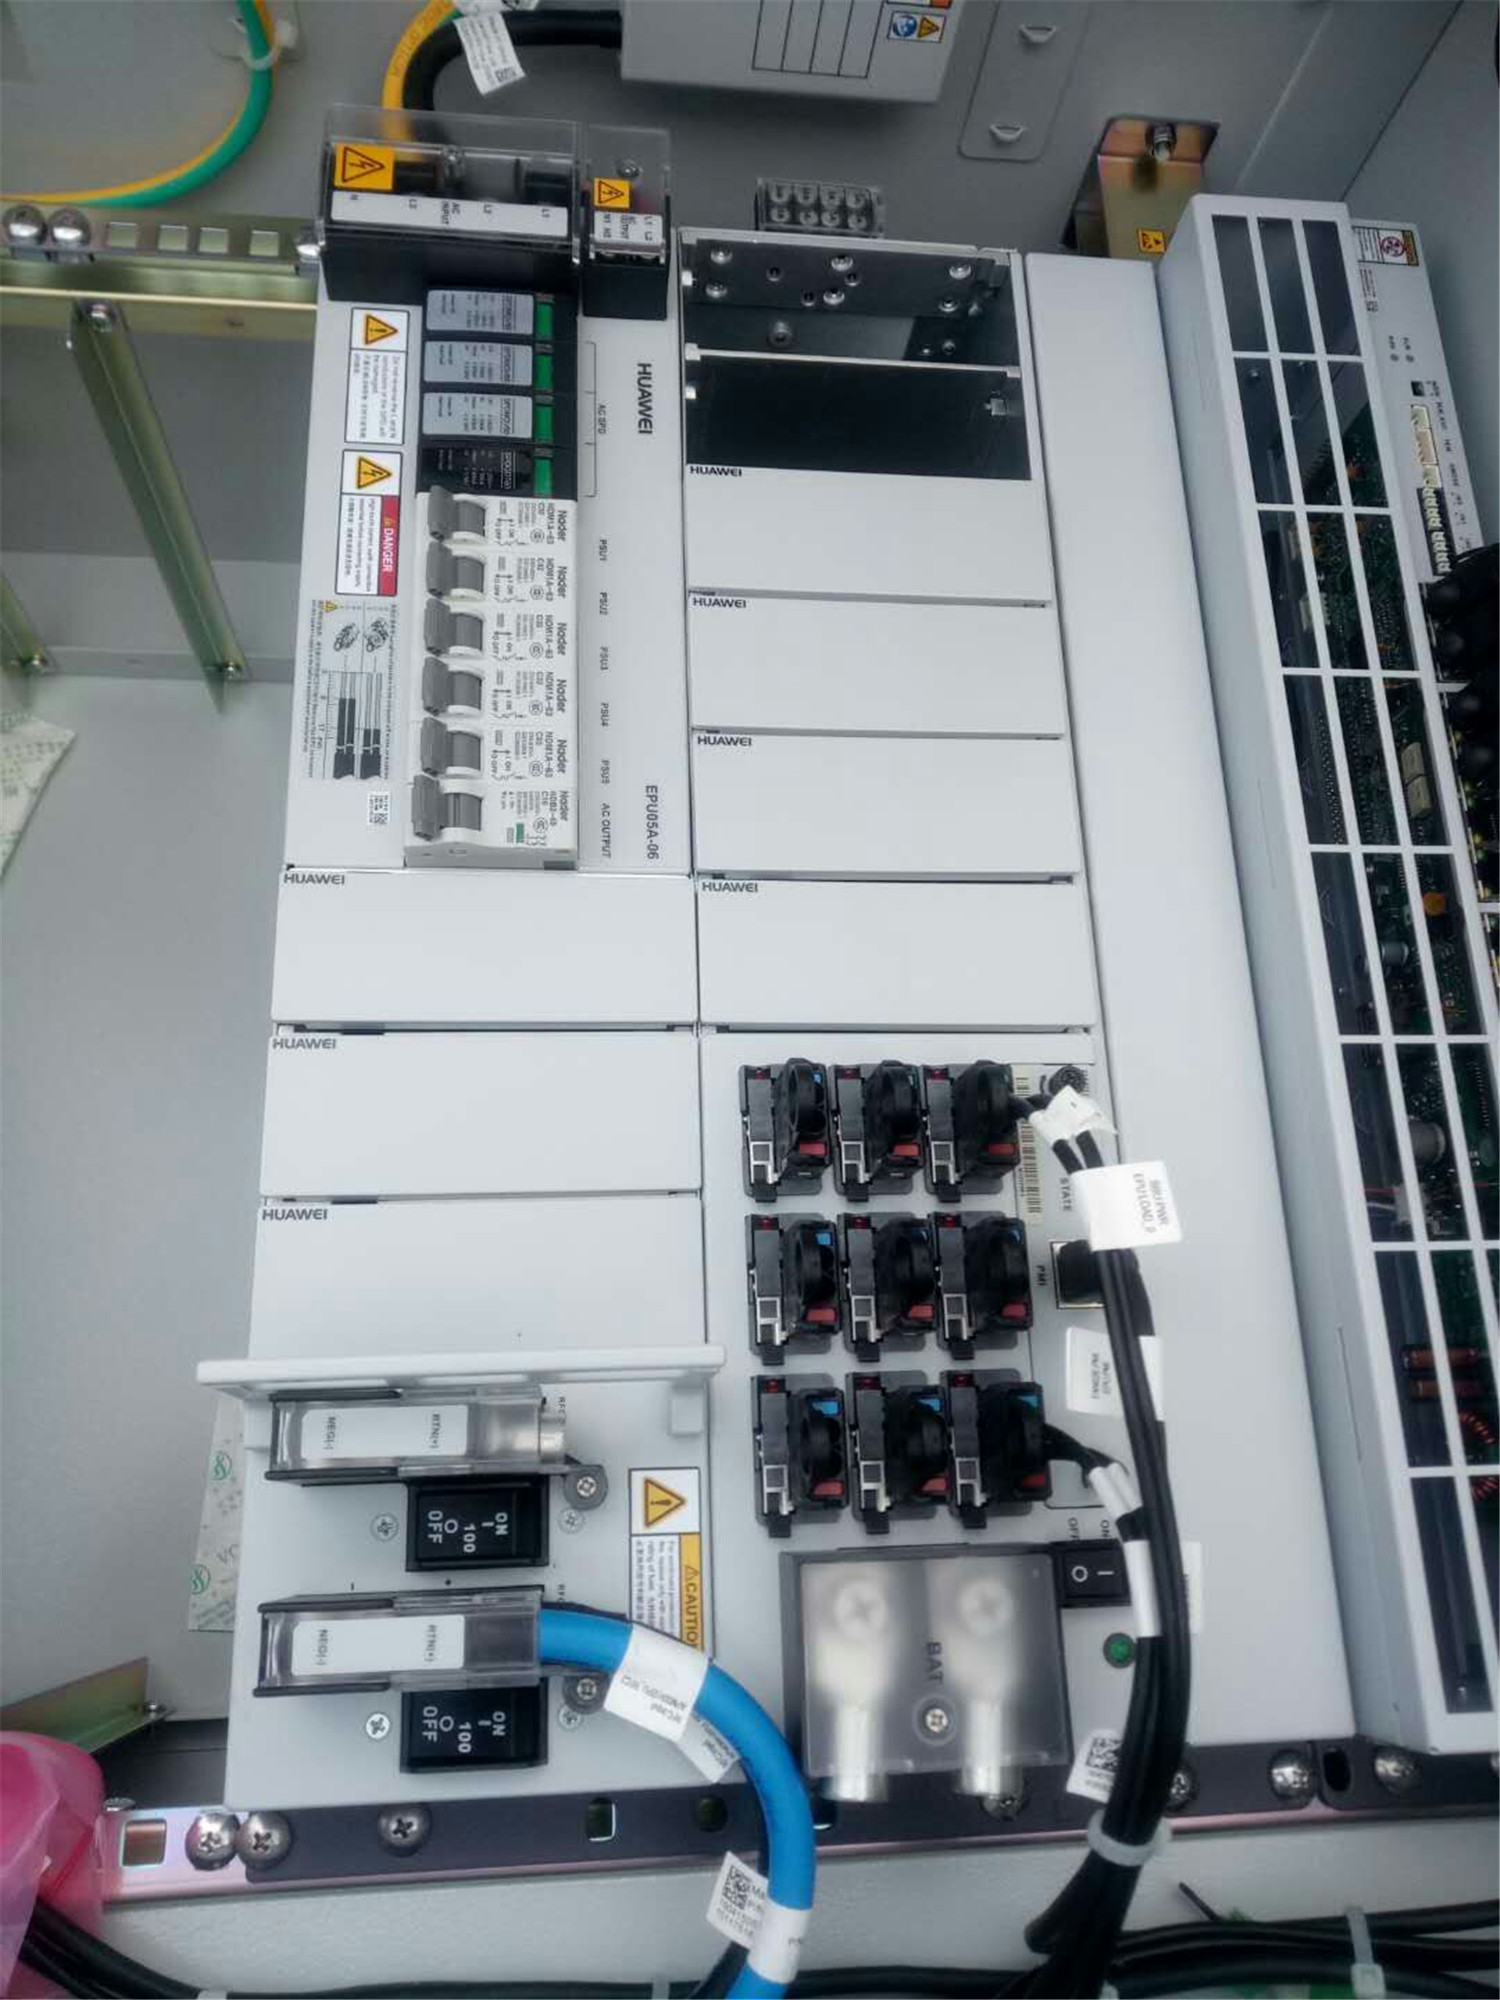 华为APM30H室外电源柜一体化电源系统 配EPW30-48A,R4850G2整流模块 华为APM30H,室外电源柜一体化电源系统,室外开关电源